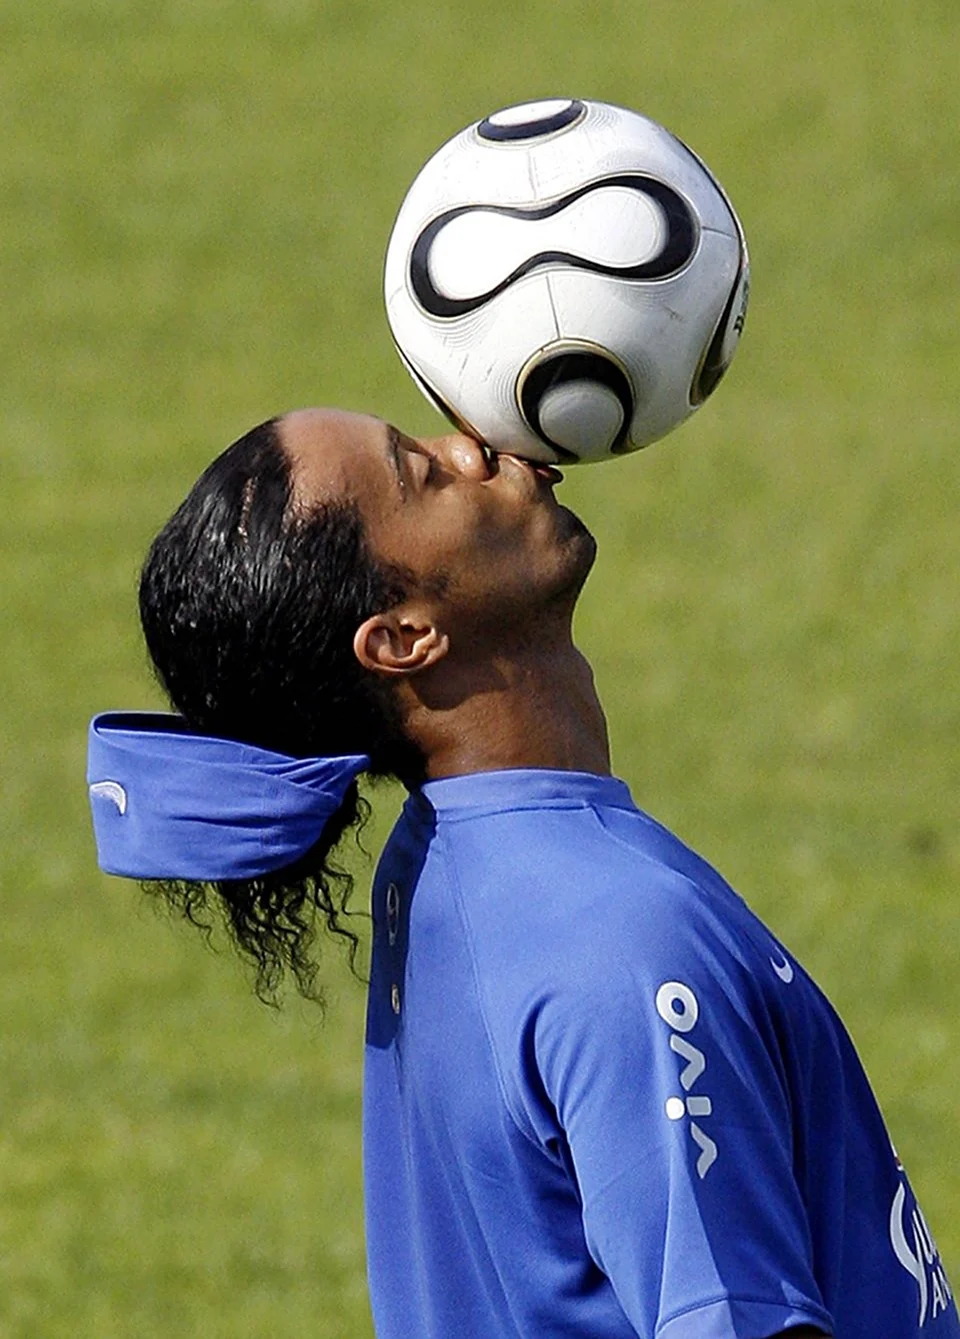 Роналдиньо с мячом на голове. Картинка